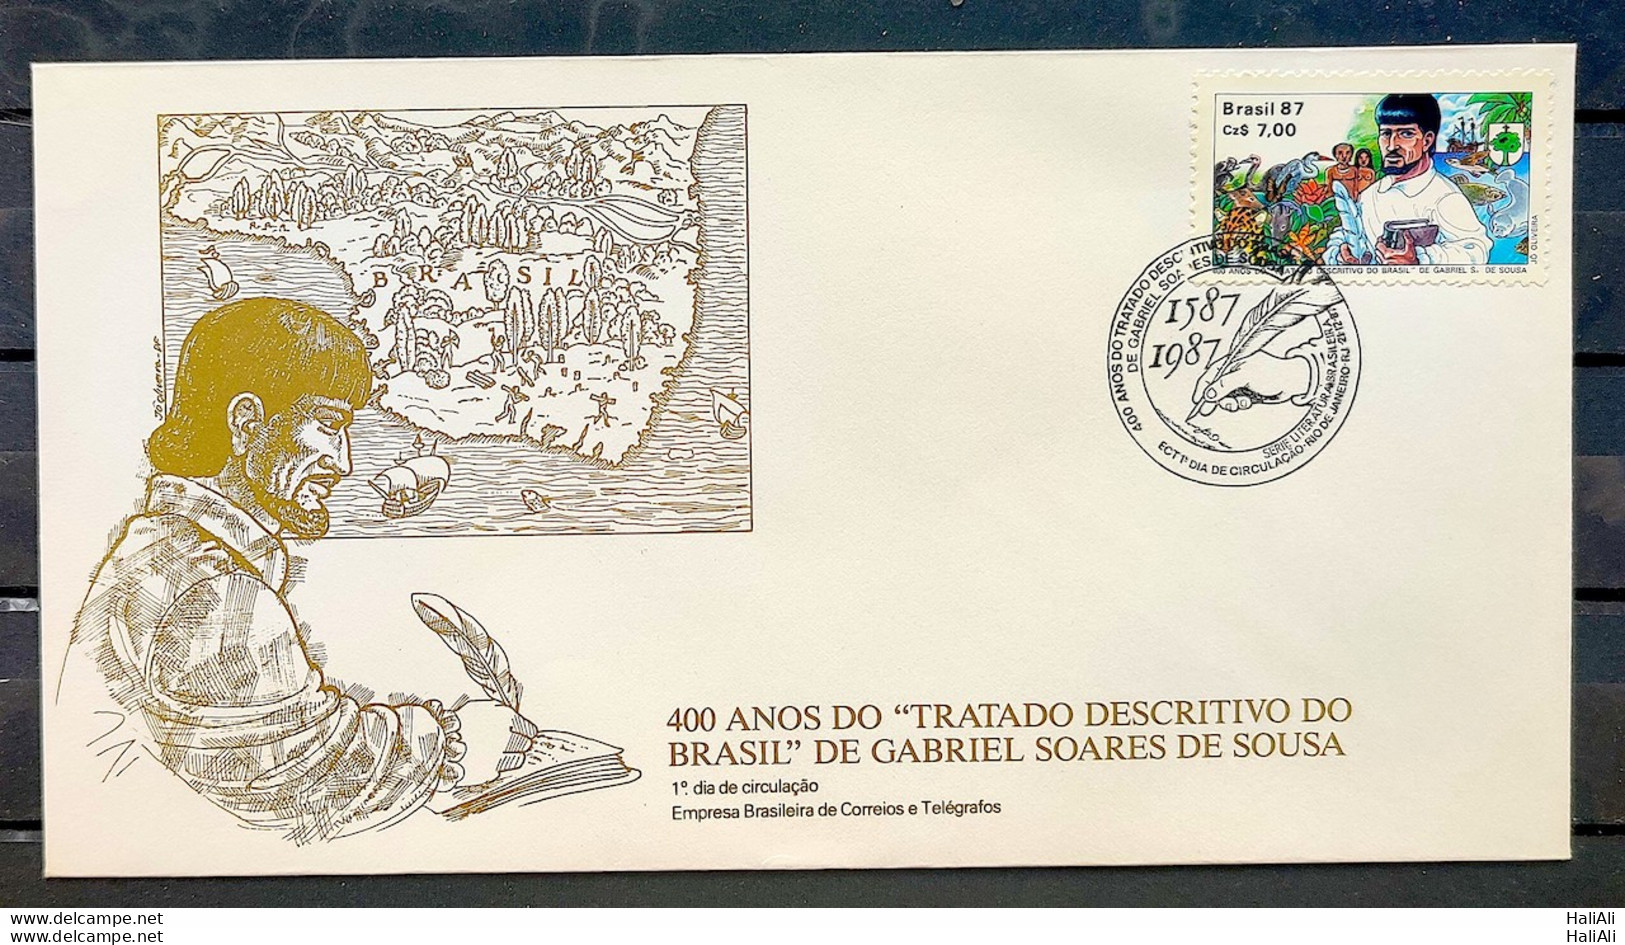 Brazil Envelope FDC 437 1988 Gabriel Soares De Sousa Literature CBC RJ 03 - FDC